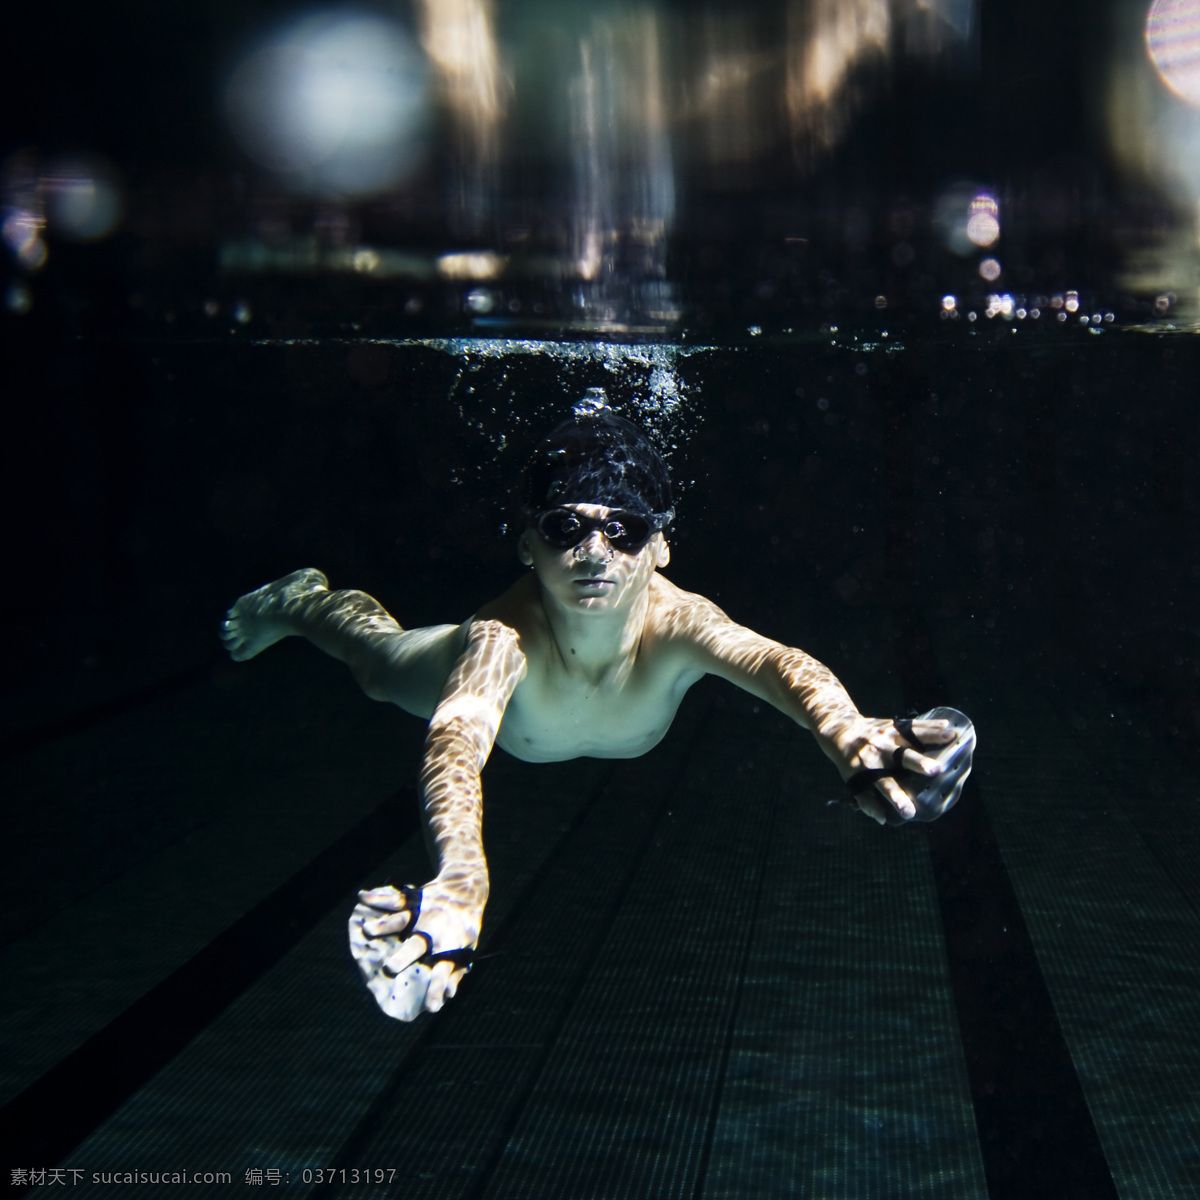 儿童 潜水 运动员 潜水的小男孩 游泳运动员 体育运动员 体育运动 体育运动项目 生活百科